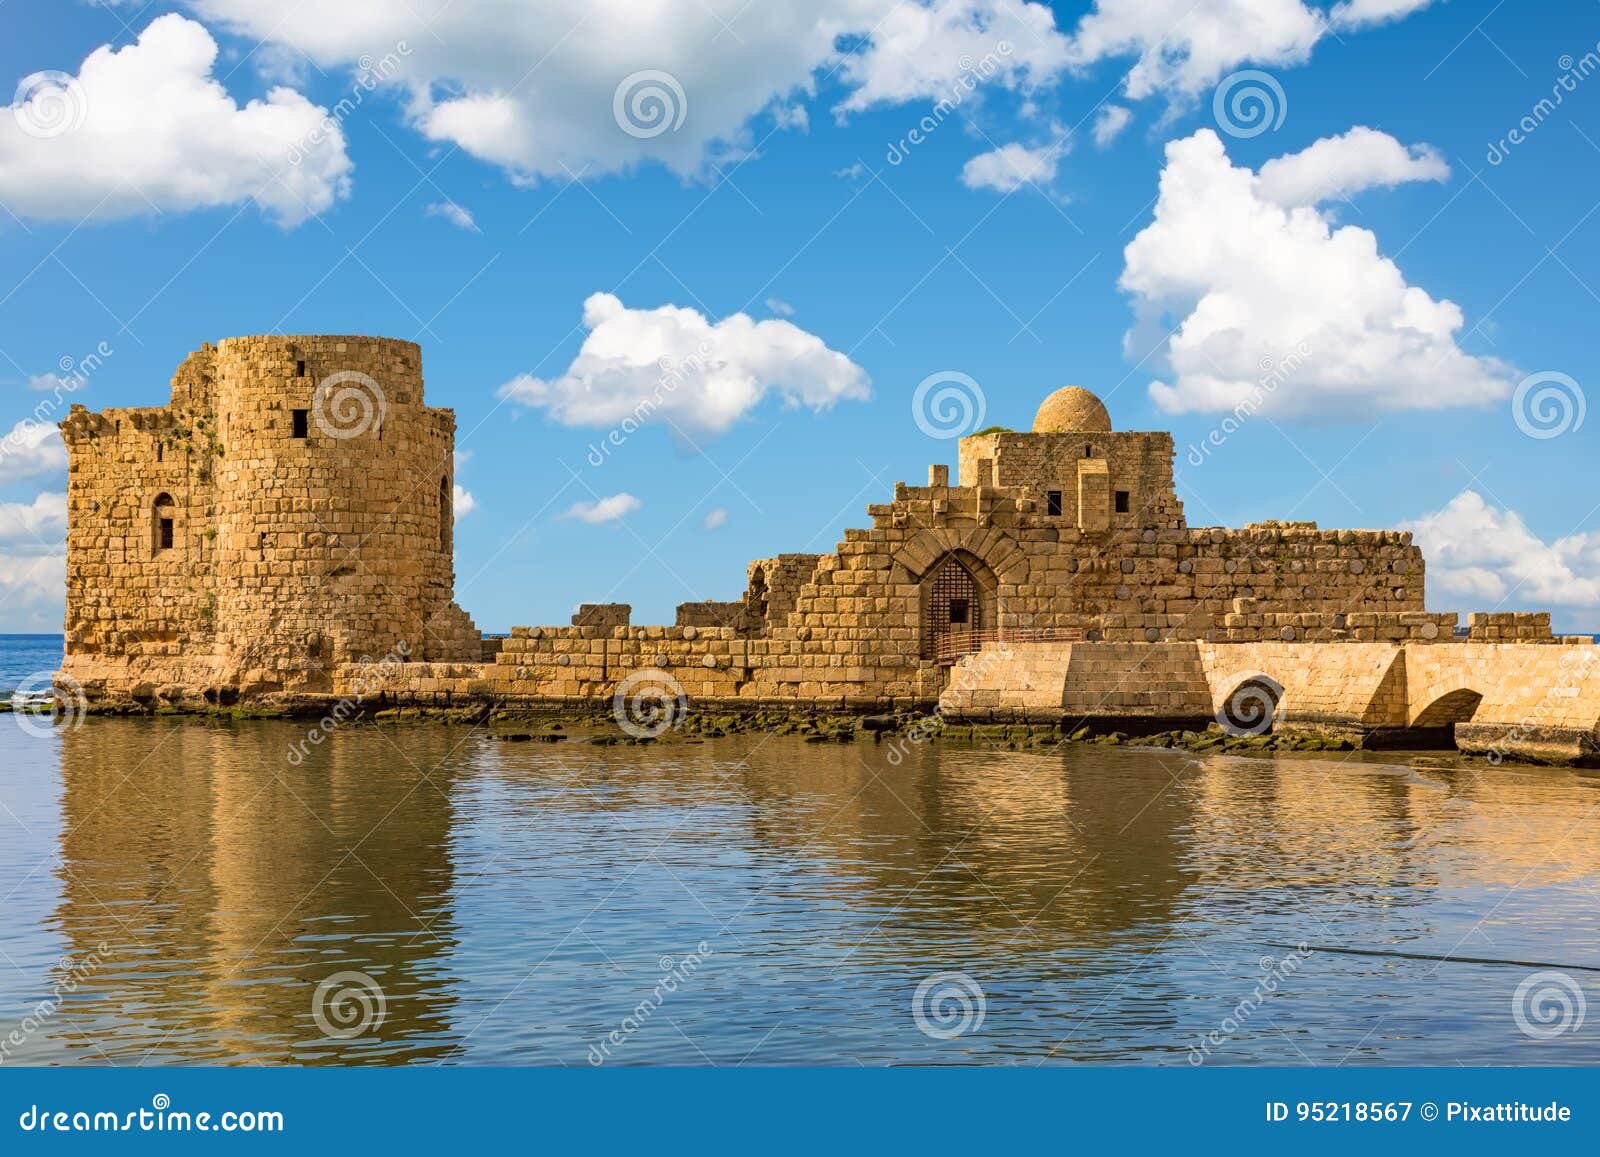 Crusaders Sea Castle Sidon Saida South Lebanon Stock Image ...